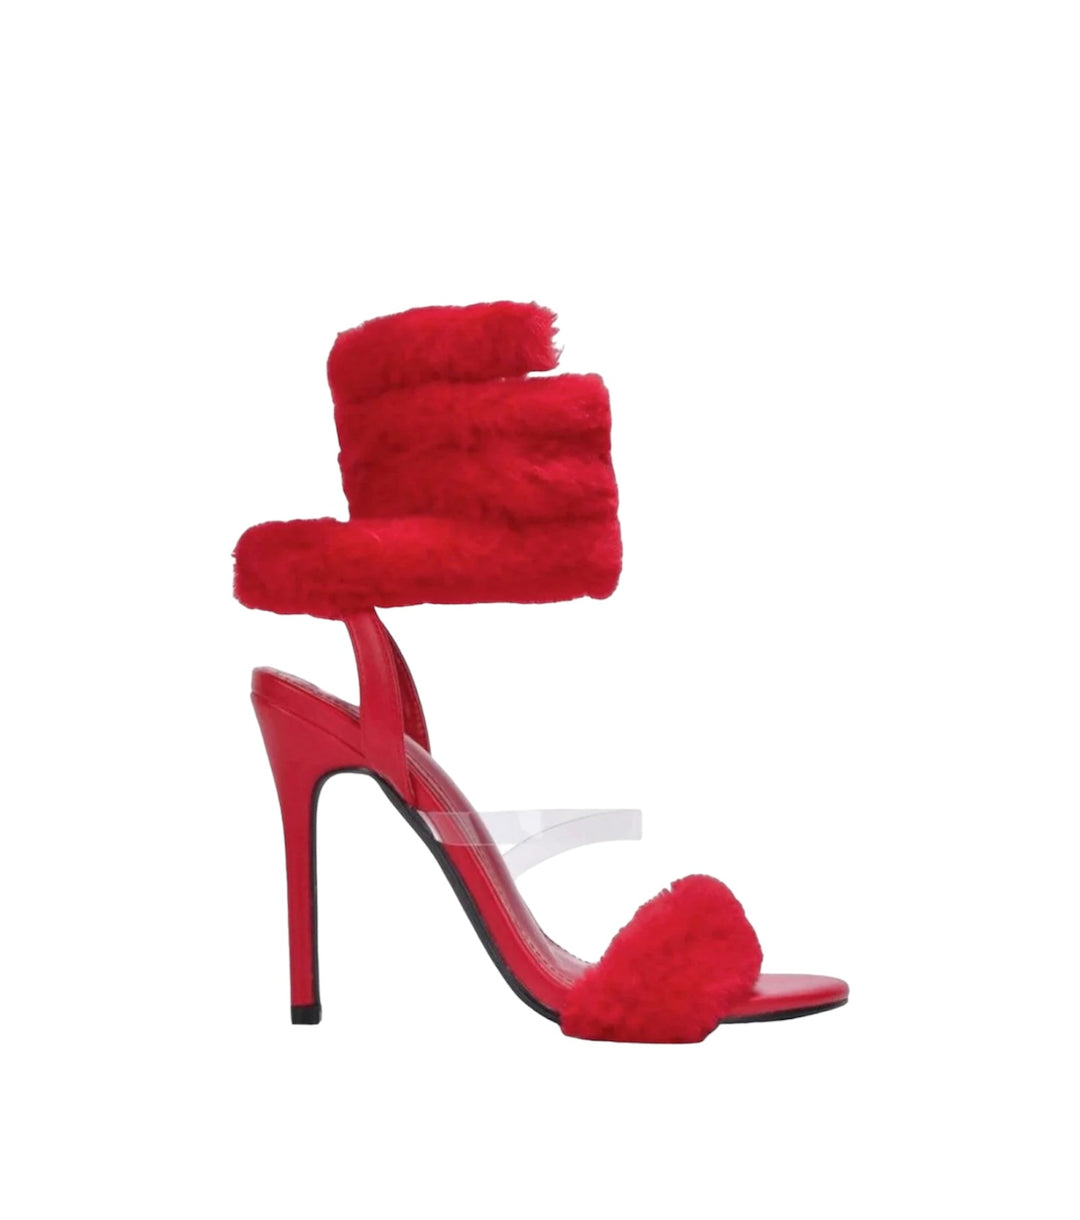 Heartbreaker Red Furry Heels, Size 7.5